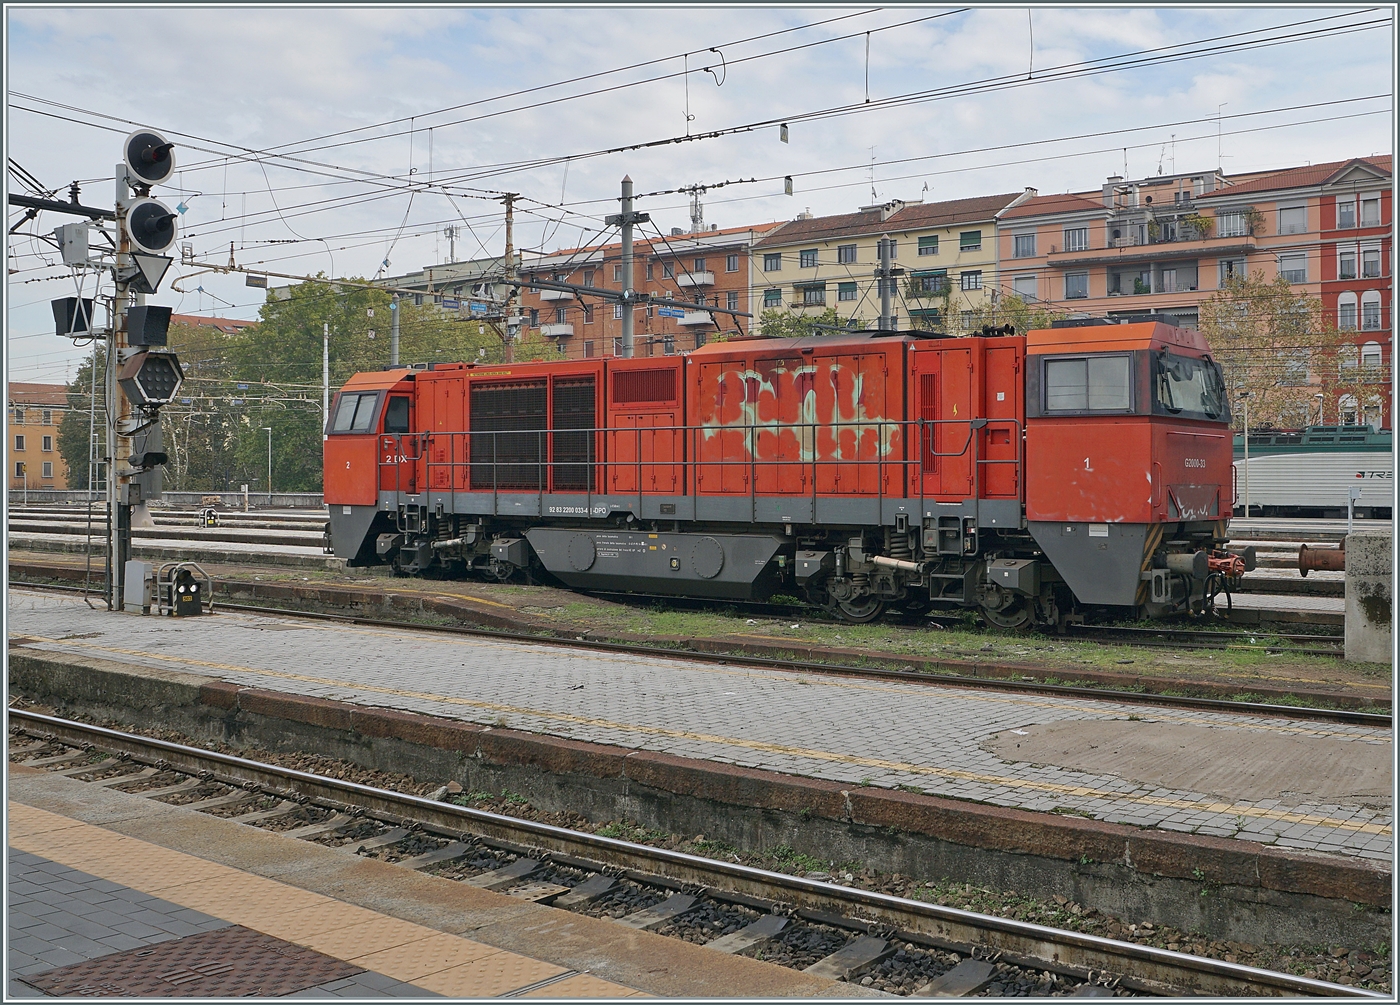 Die Dinazzano P Diesellok G 2200-33 (92 83 2200 033-4 I-DPO) steht in Milano Centrale. Die  Sonderbemalung  habe ich etwas entfernt.

8. November 2022